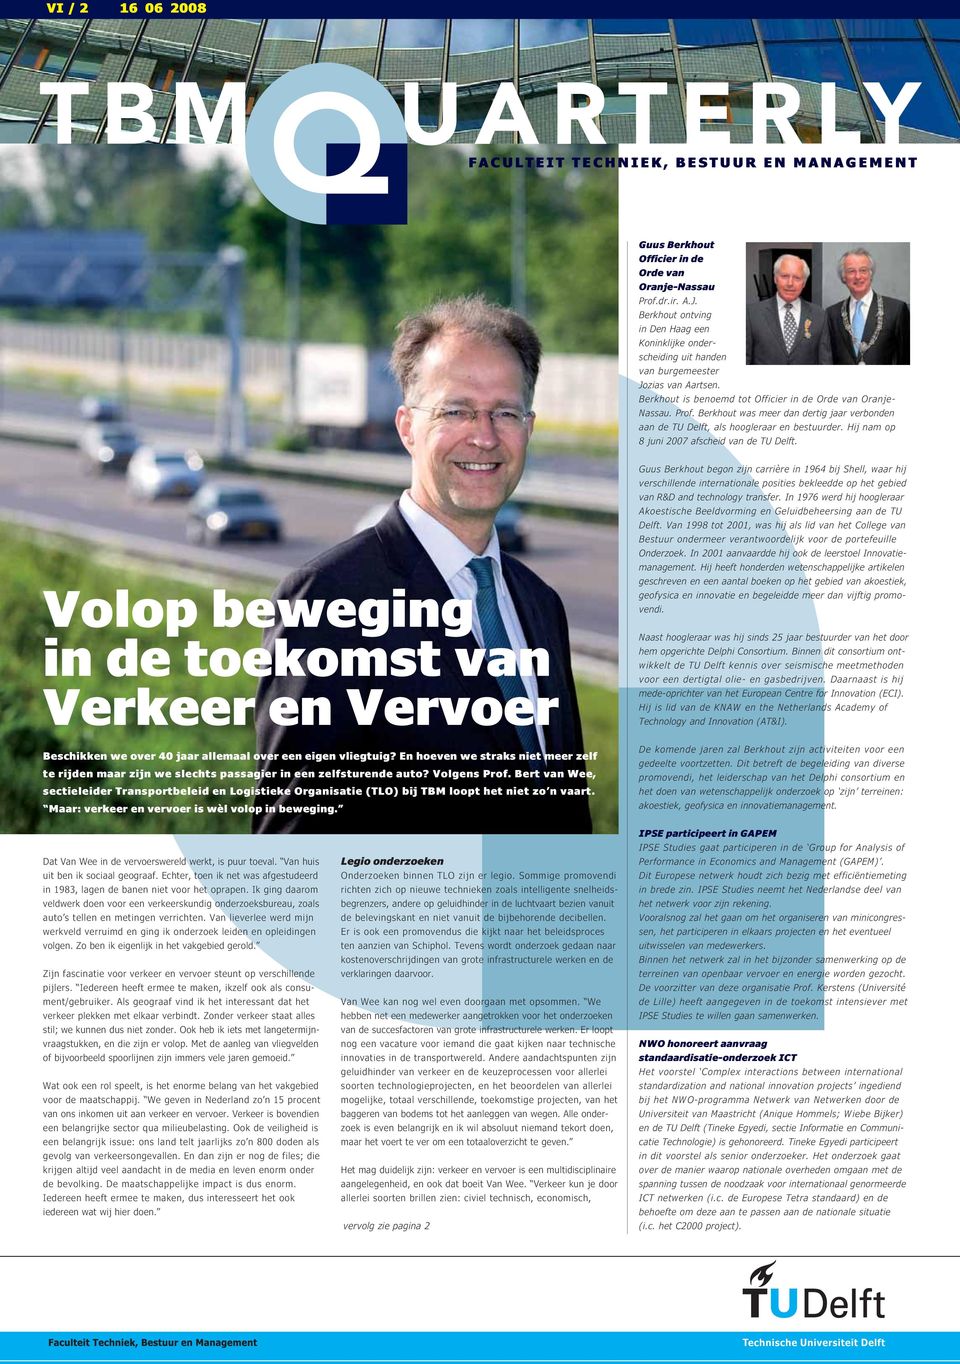 Berkhout was meer dan dertig jaar verbonden aan de TU Delft, als hoogleraar en bestuurder. Hij nam op 8 juni 2007 afscheid van de TU Delft.